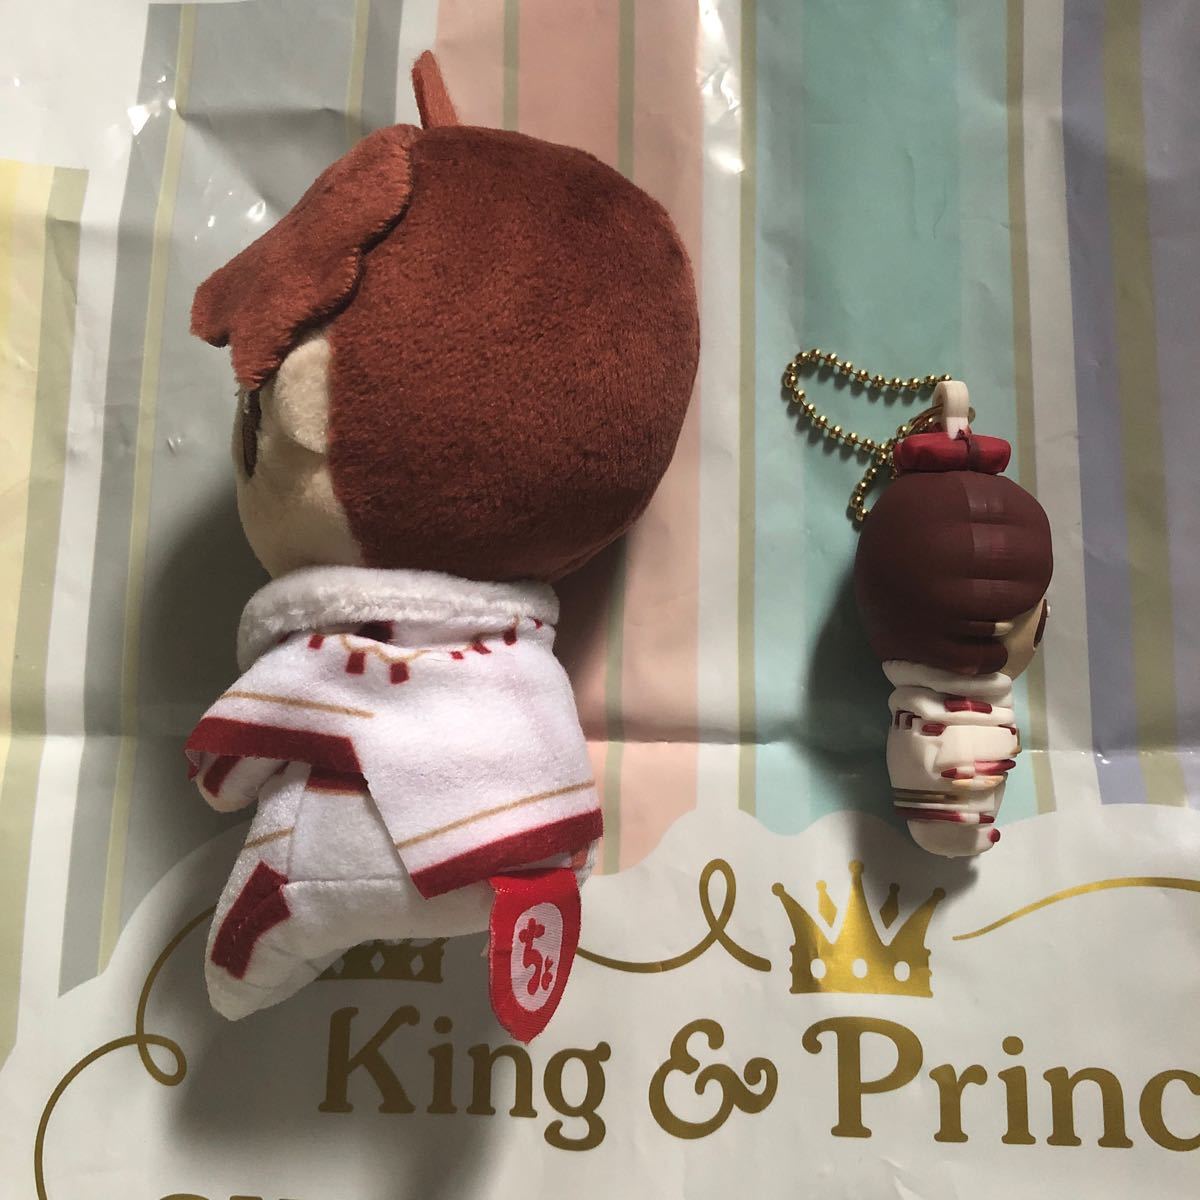 King & Prince キンプリ 平野紫耀さん ちょっこりさん pvcキーホルダー